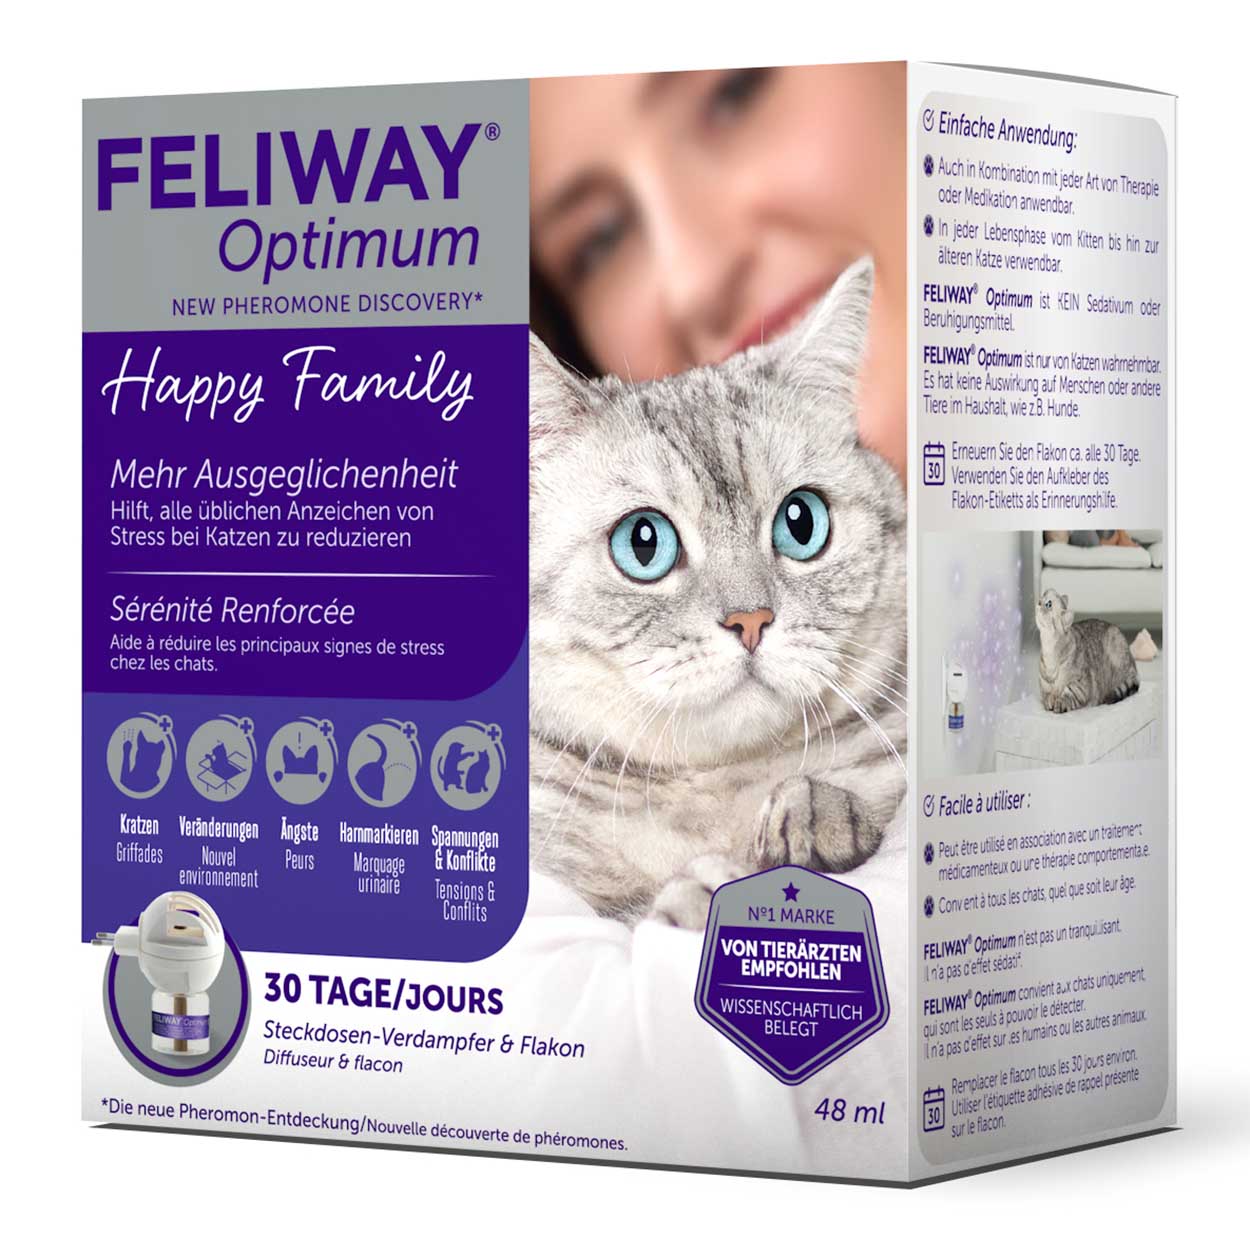 Feliway Optimum Start Set, preiswert und günstig, gegen Stress bei Katzen